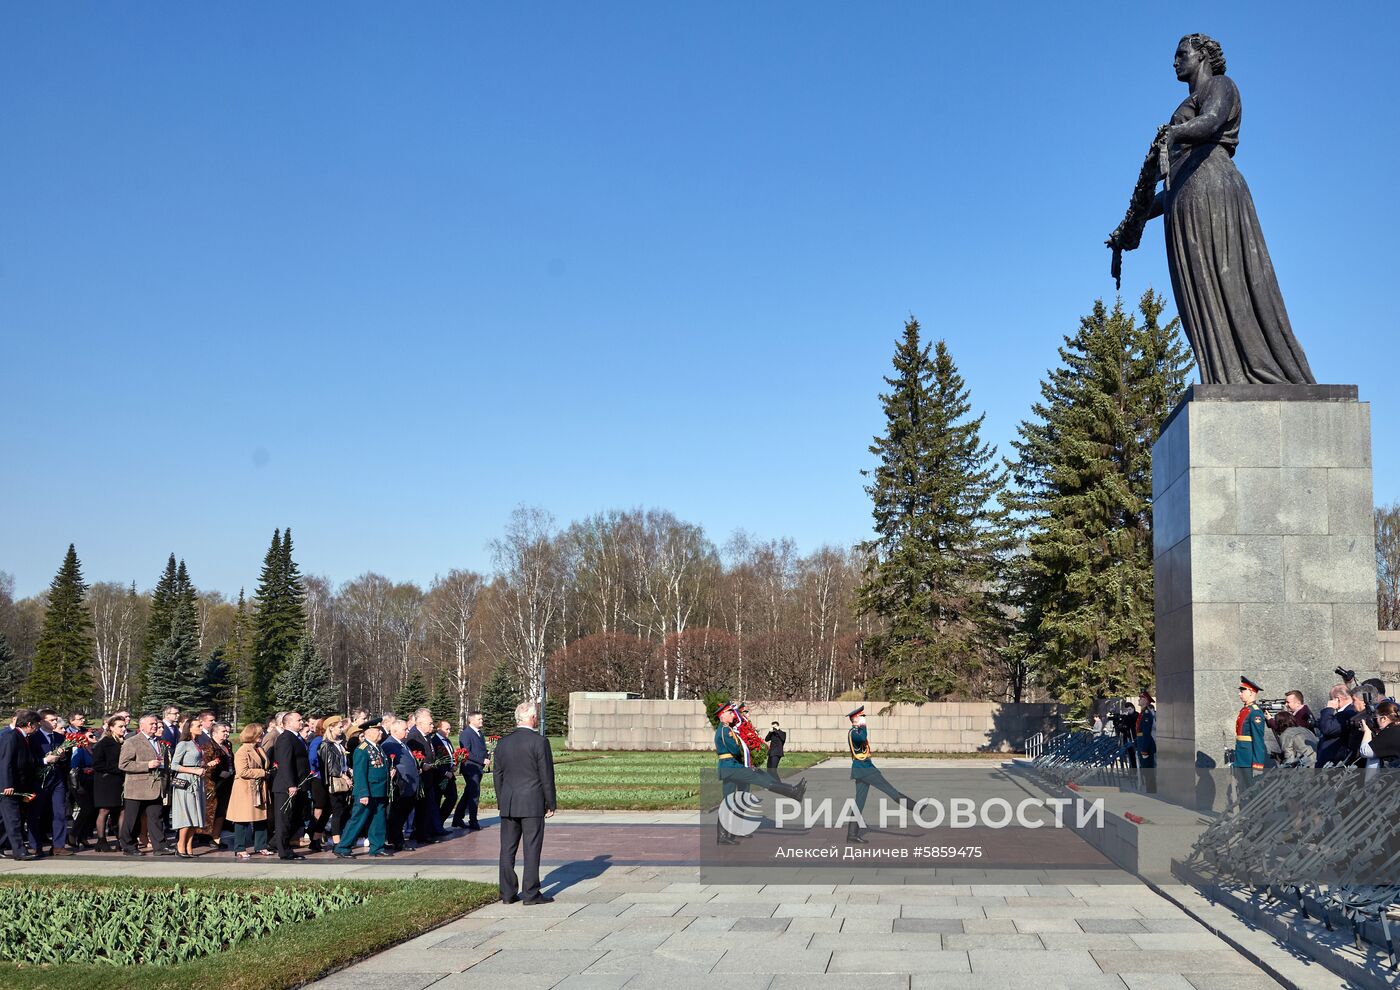 Мероприятия, посвящённые 75-й годовщине освобождения Ленинграда от фашистской блокады 